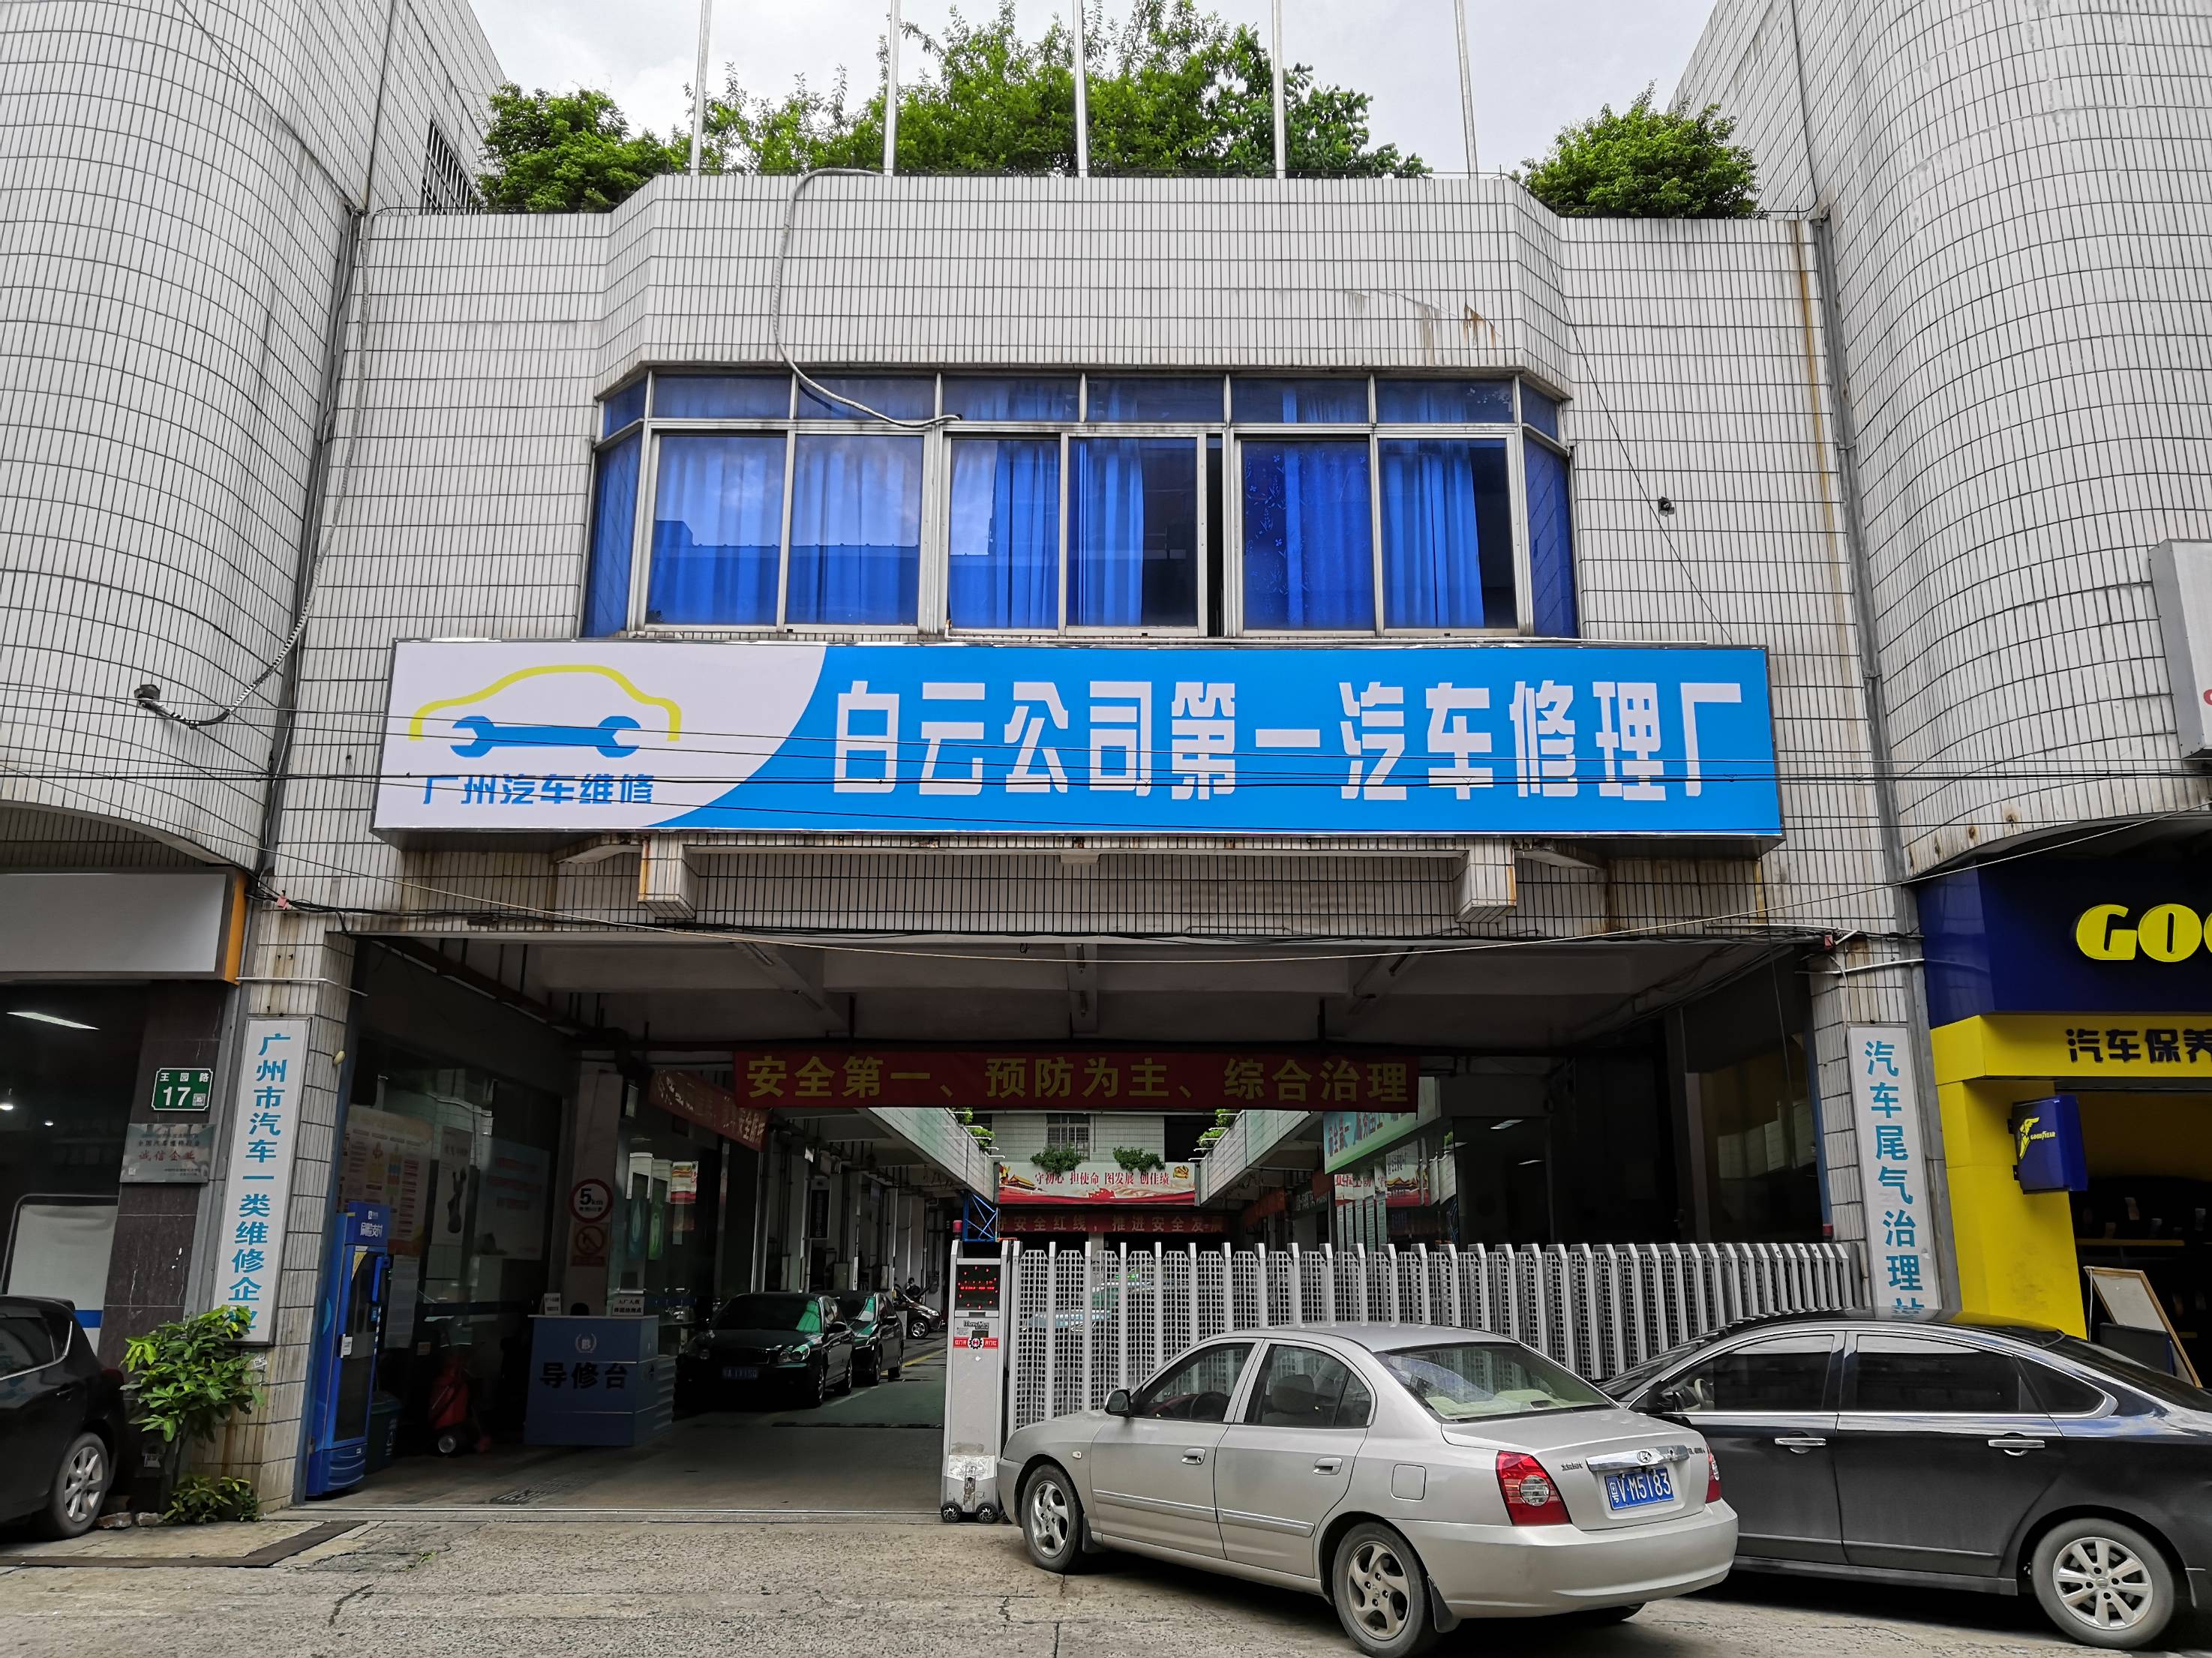 广州市白云出租汽车集团有限公司第一汽车修理厂 枫车合作门店 第1张